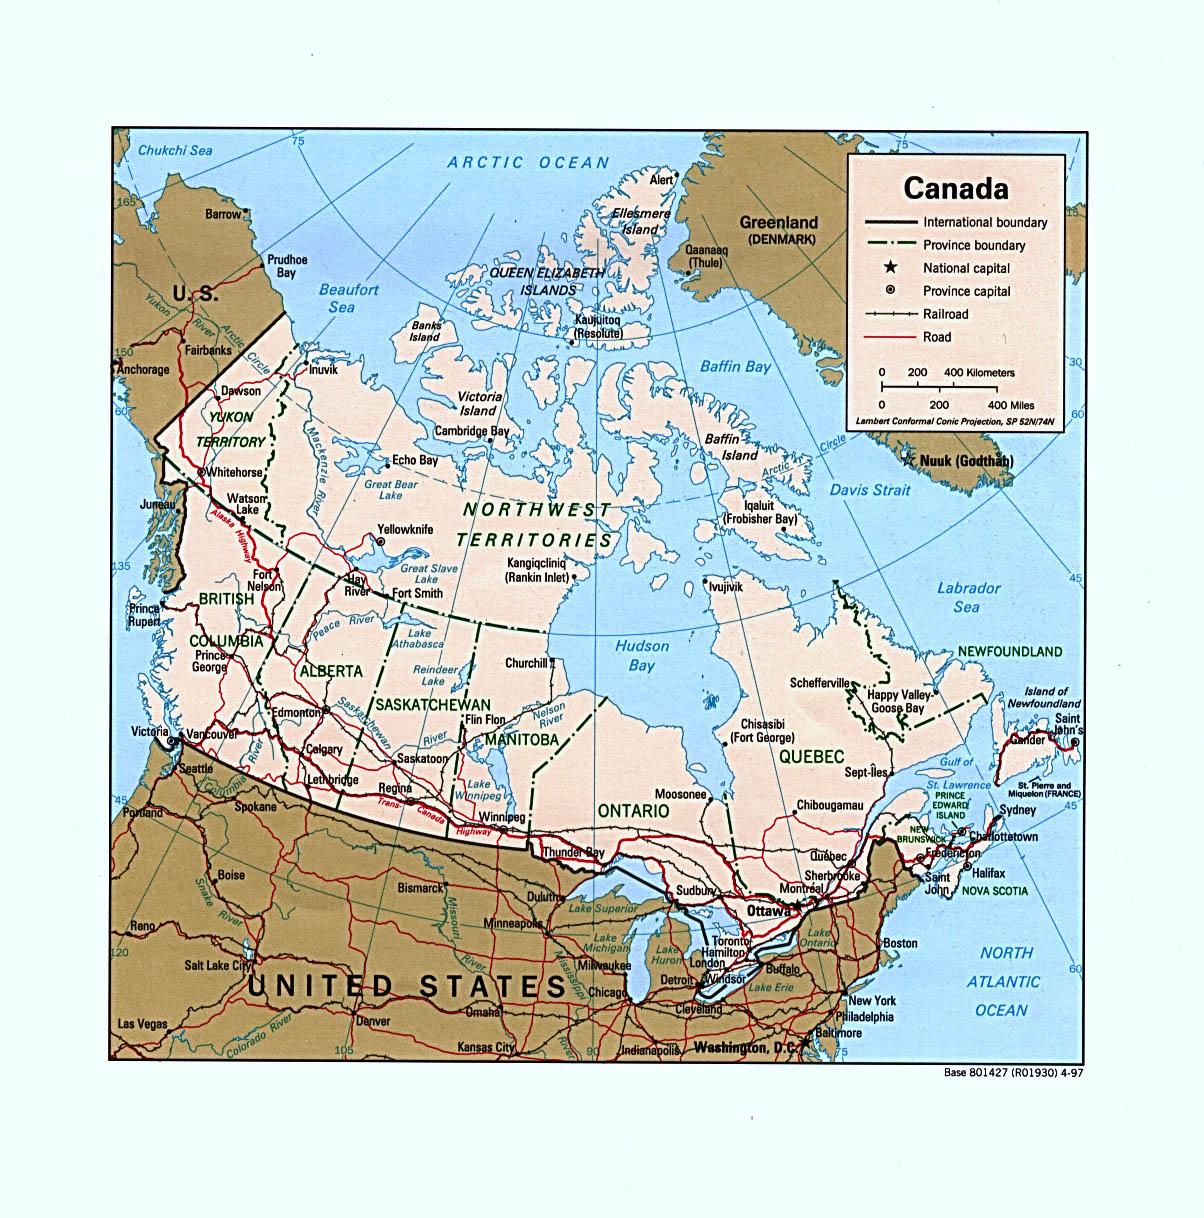 Mapa Rodoviario Da Regiao Oeste Do Canada Mapa Do Canada Ocidental Road Map America Do Norte Americas